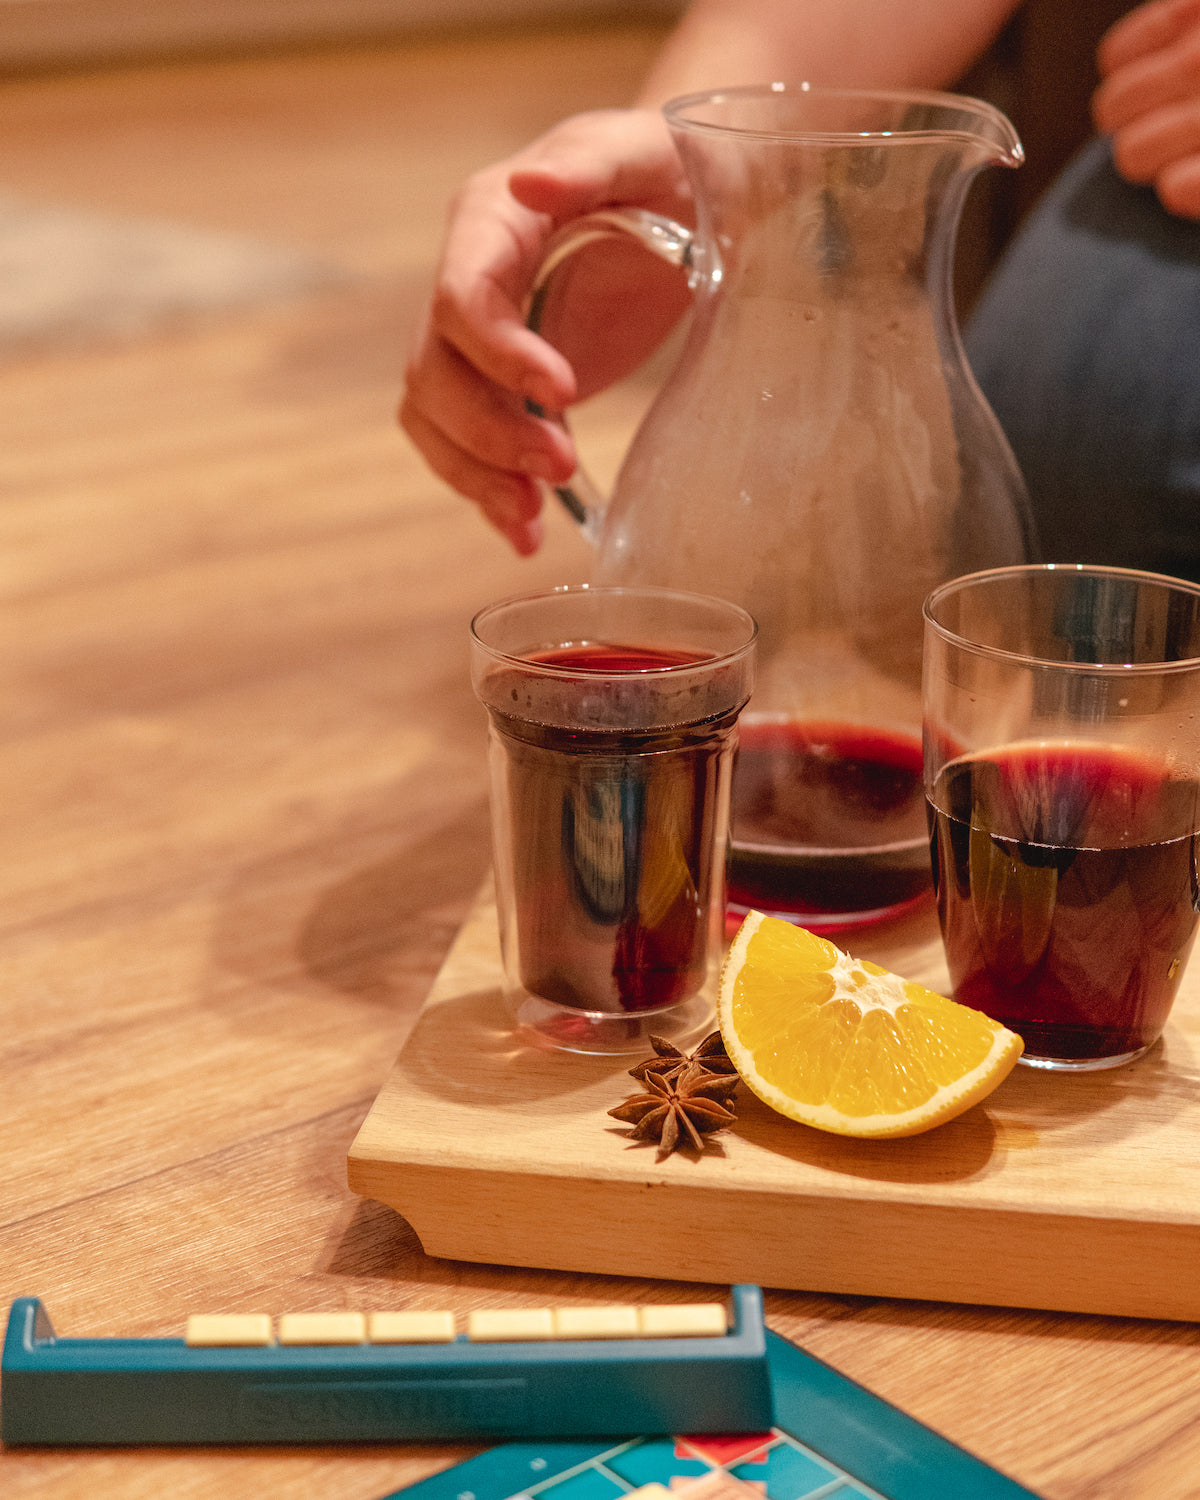 Dvoustěnná sklenice Simax Dual se svařeným vínem při hraní deskové hry